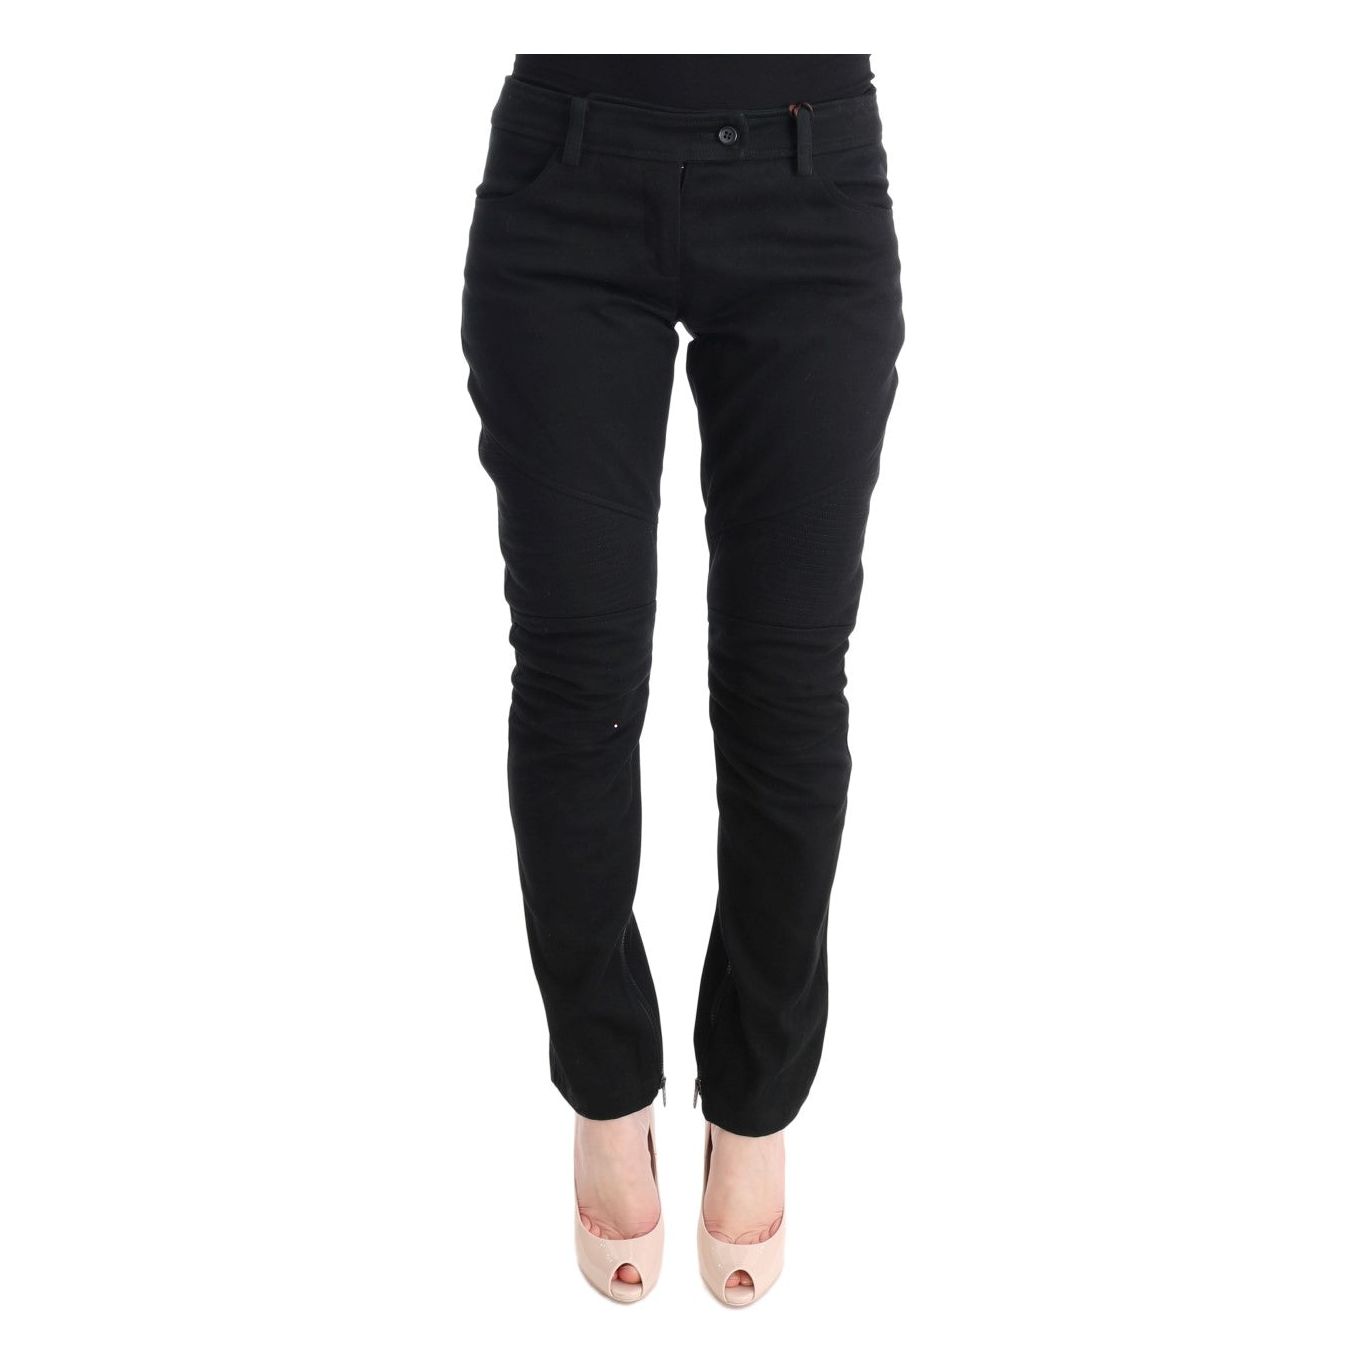 Ermanno Scervino Chic Black Slim Fit Trousers black-cotton-slim-fit-casual-pants Jeans & Pants 449168-black-cotton-slim-fit-casual-pants.jpg